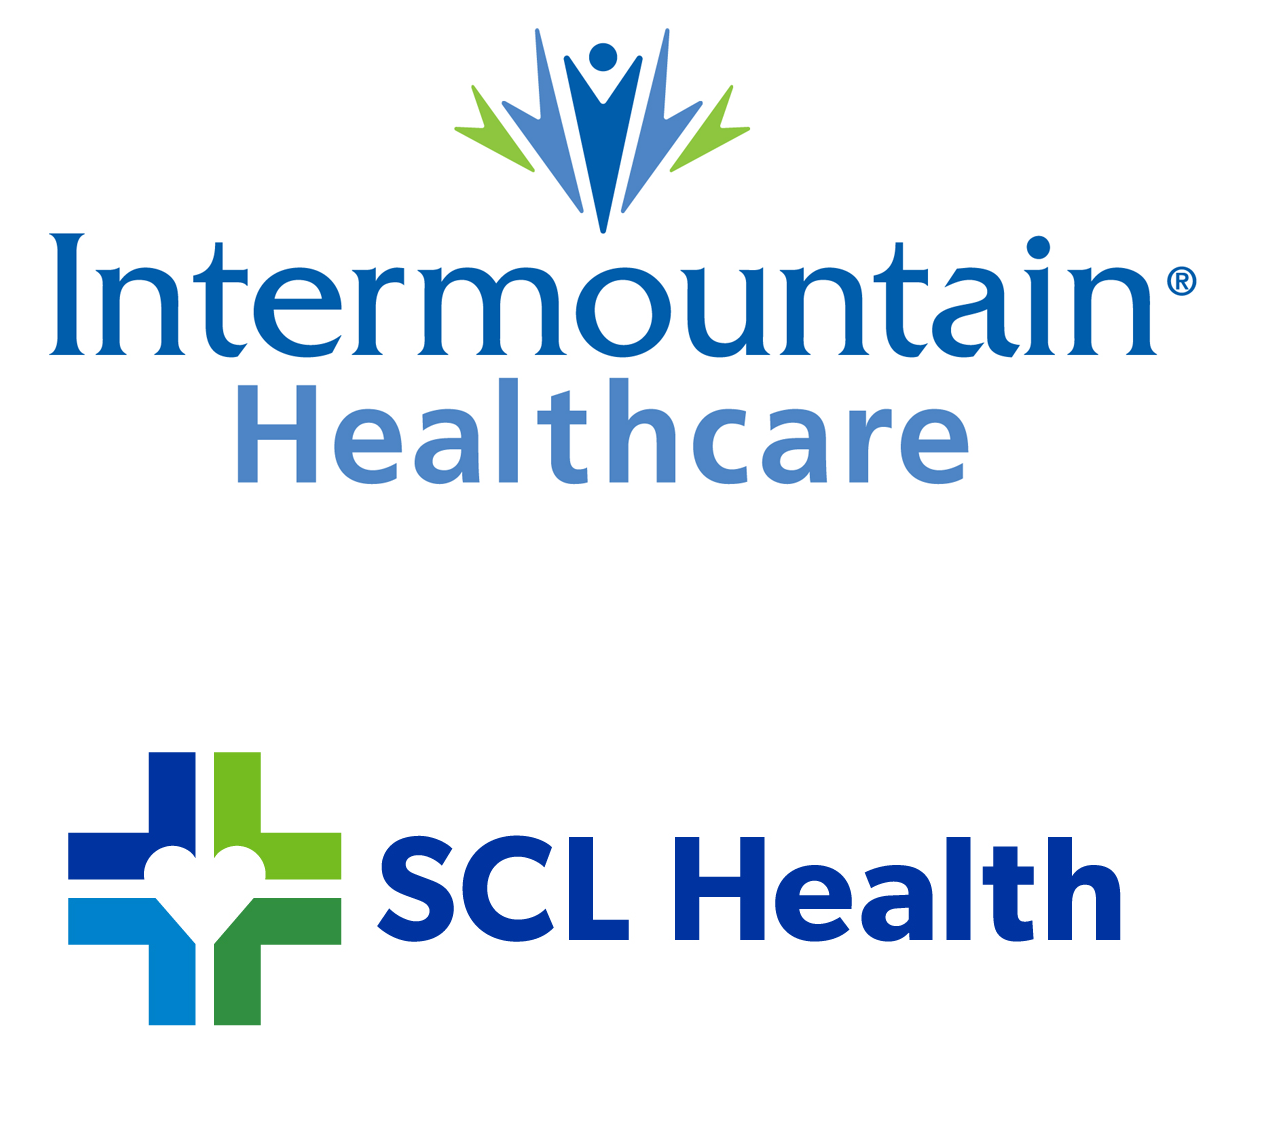 Intermountain Healthcare SCL Health